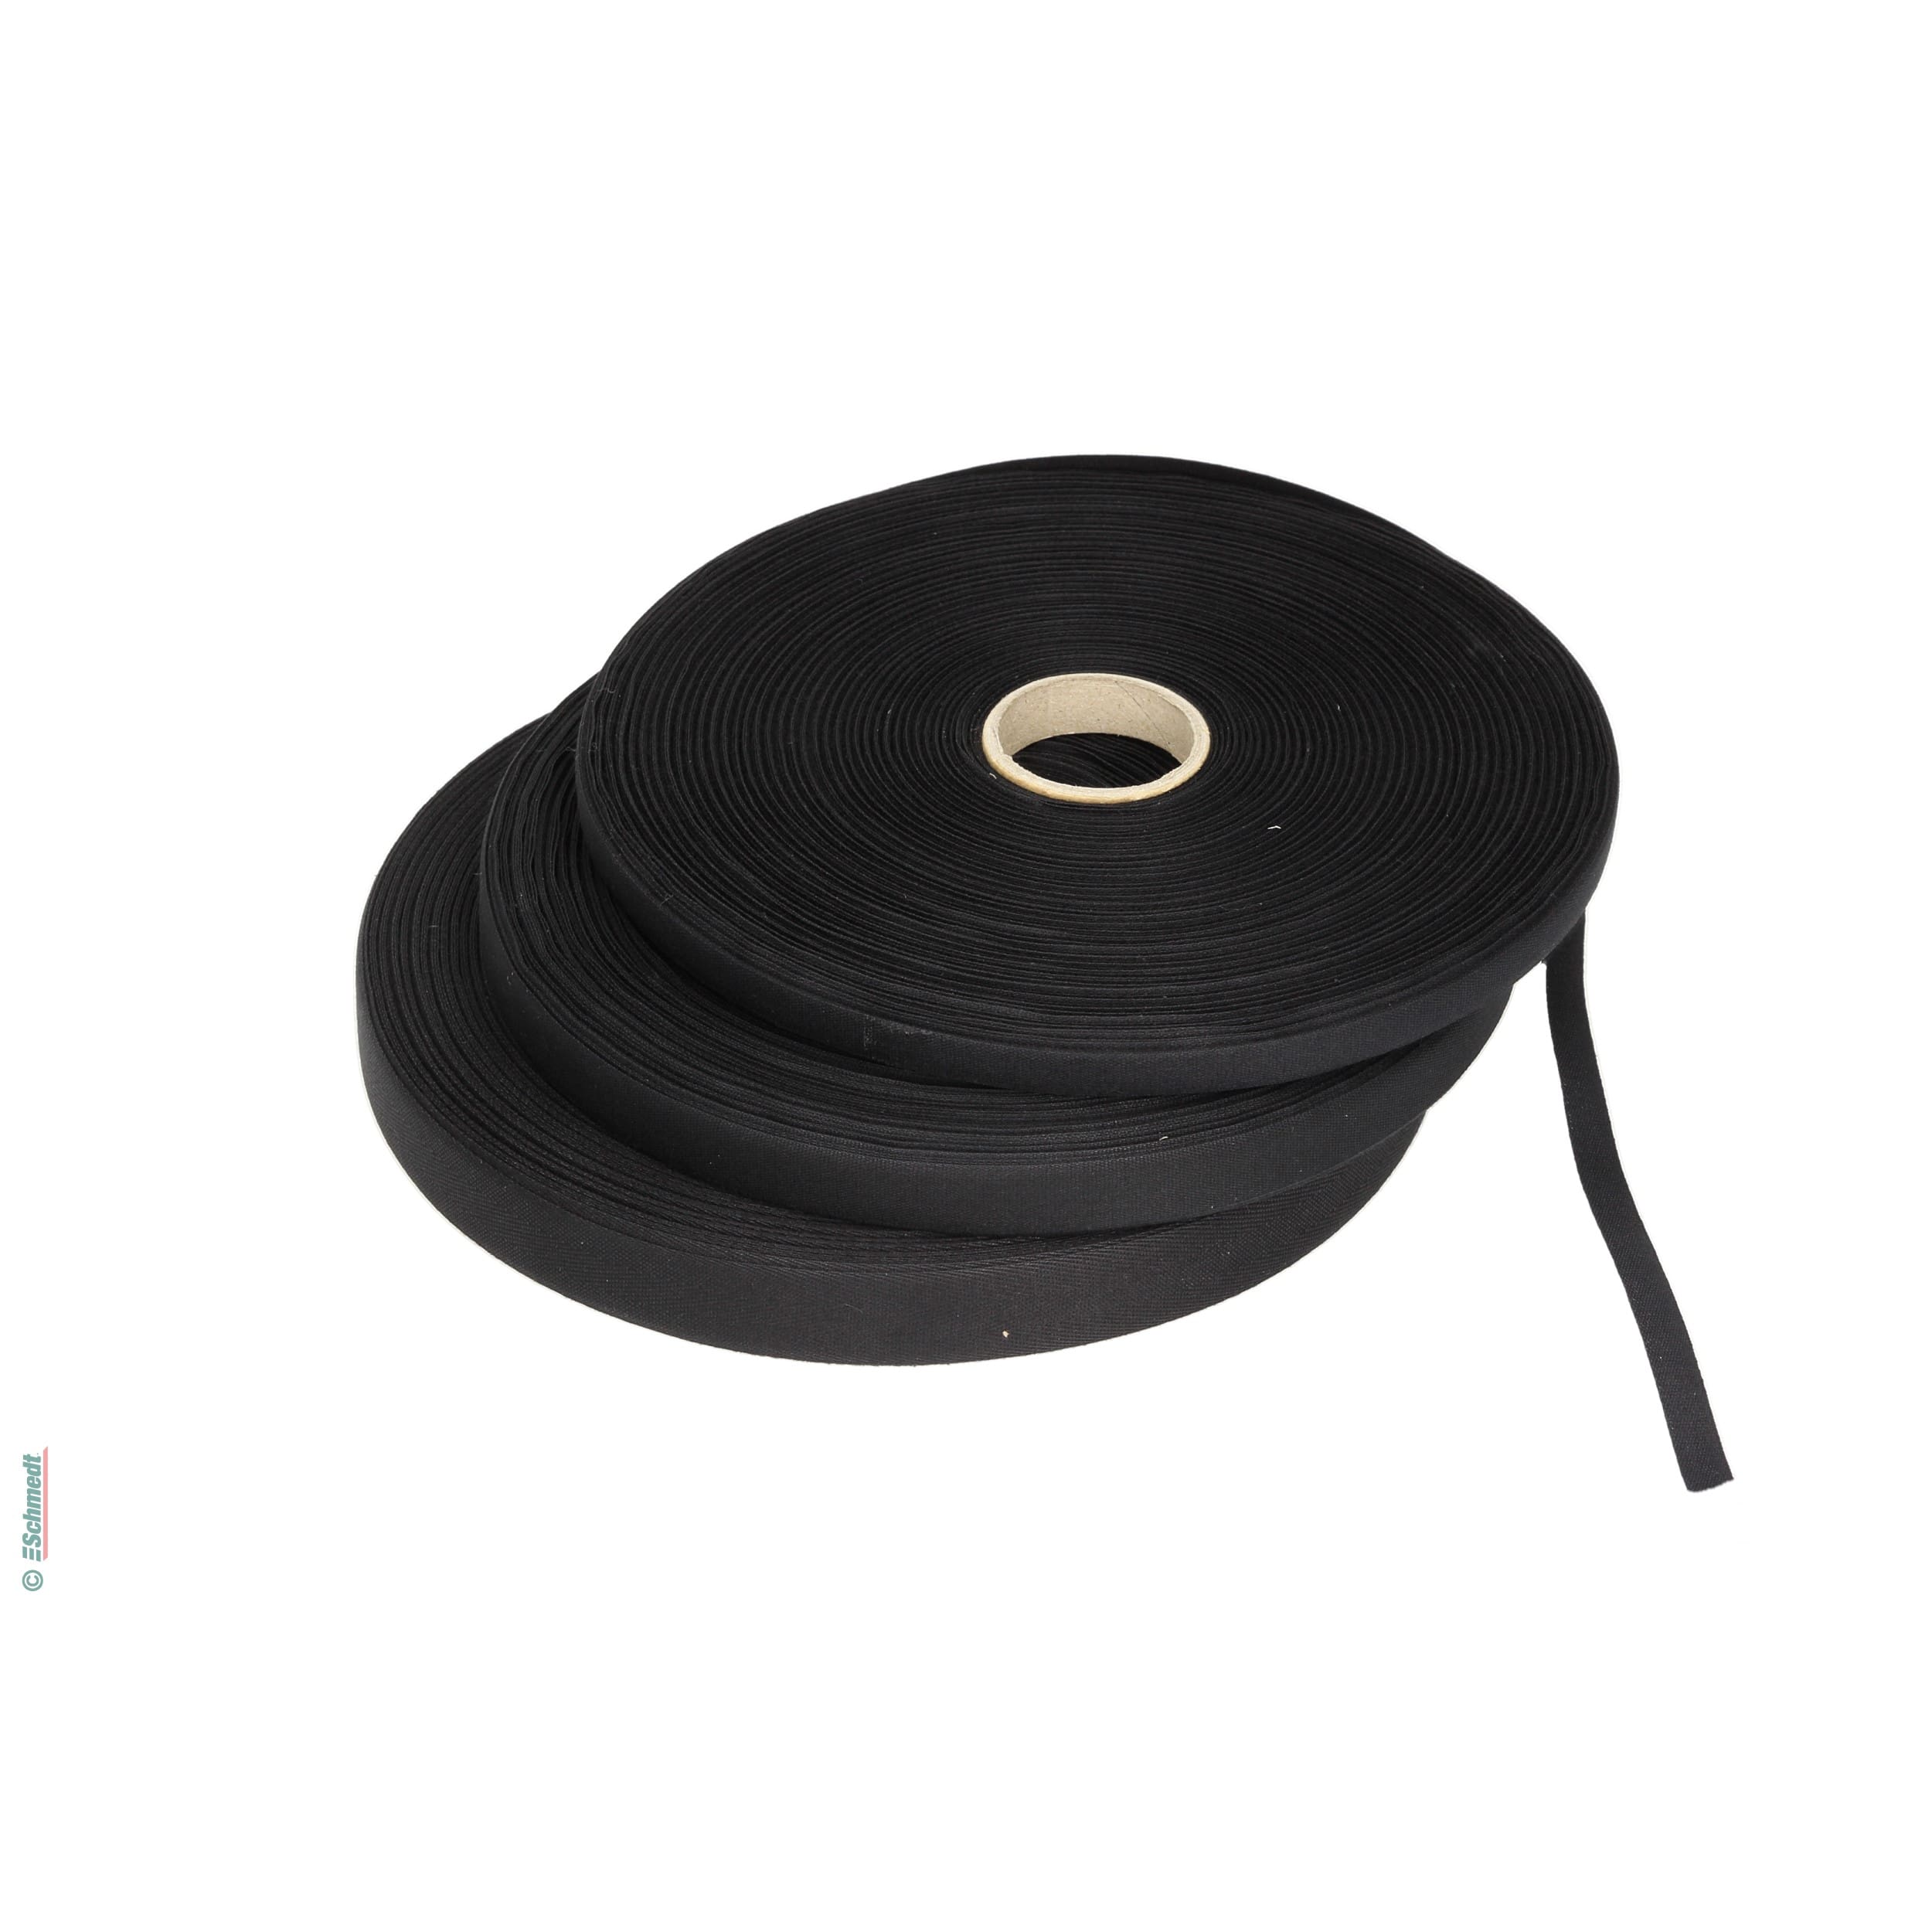 Cinta para carpetas - cinta fina de hilo - Anchura (en mm) 20 - Color negro - para cerrar carpetas y libros...